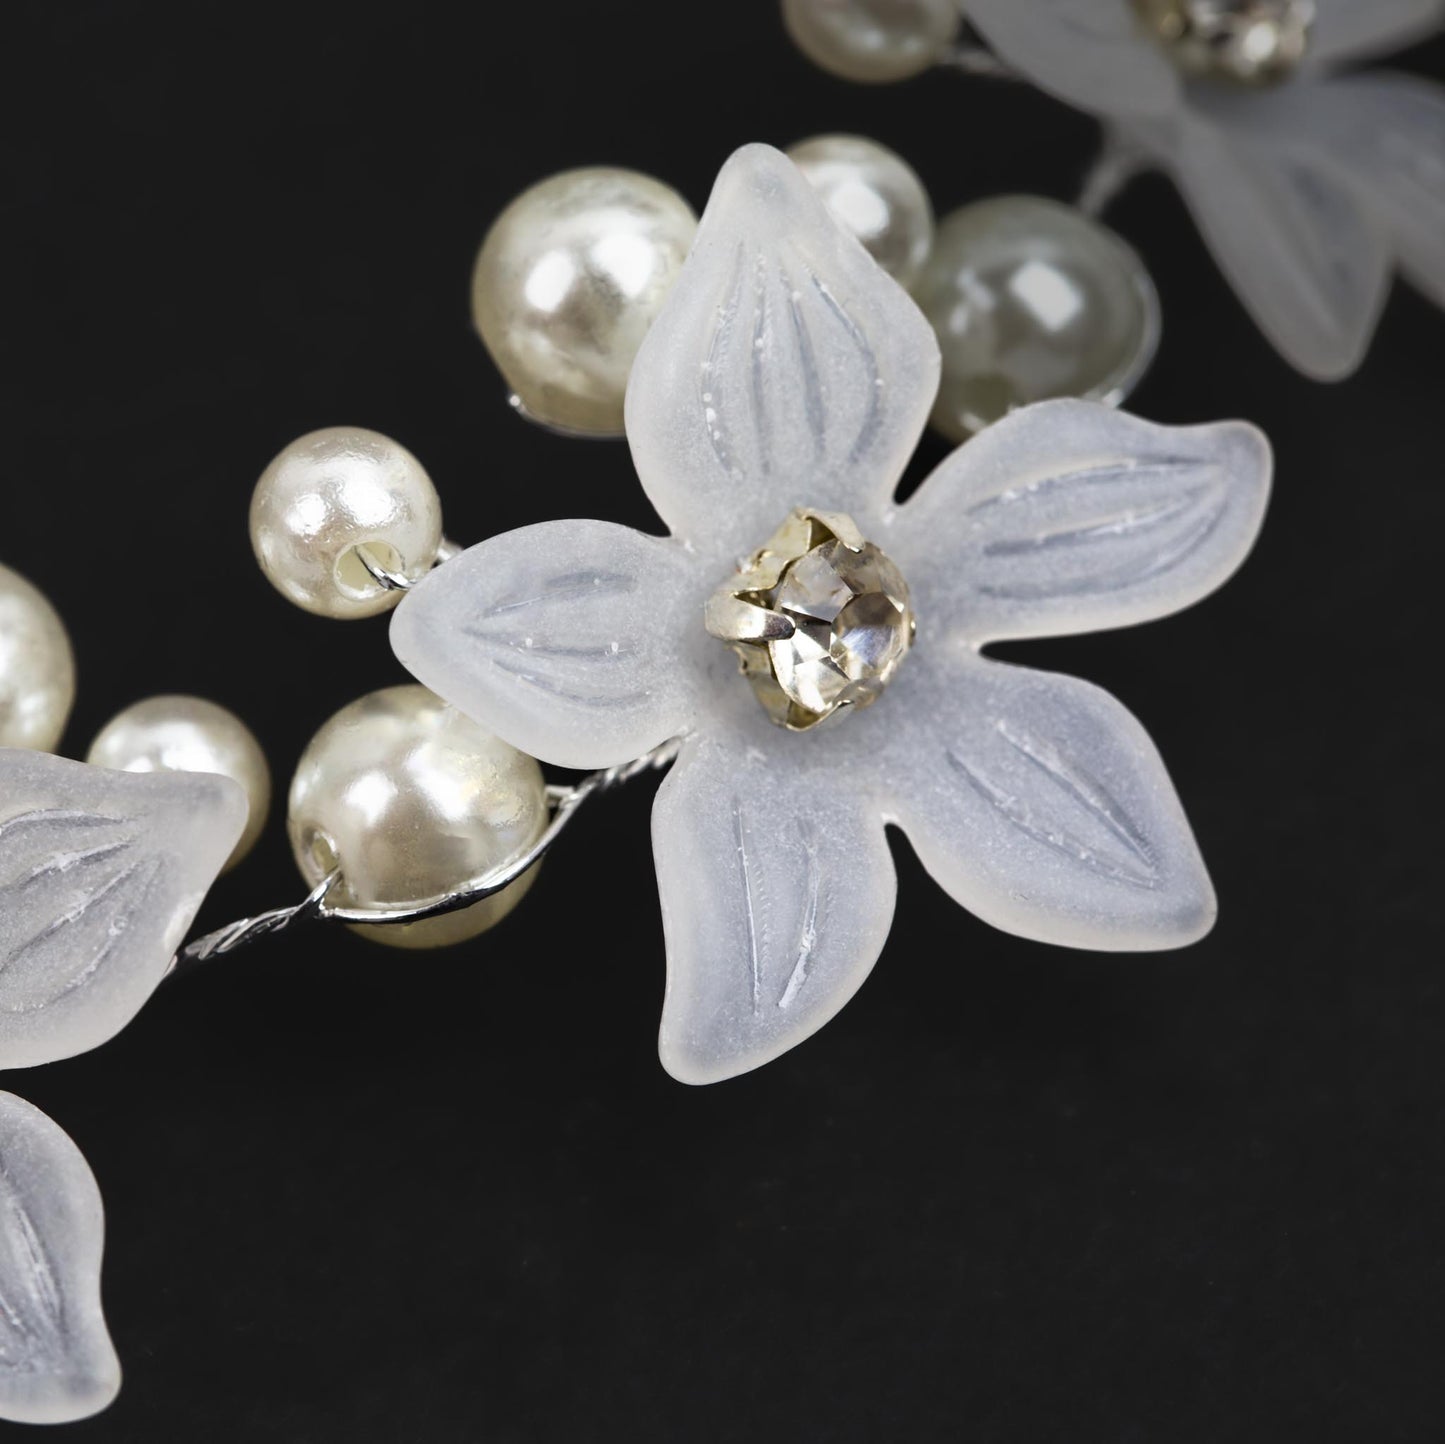 Diademă elegantă maleabilă cu pietre, flori - Argintiu